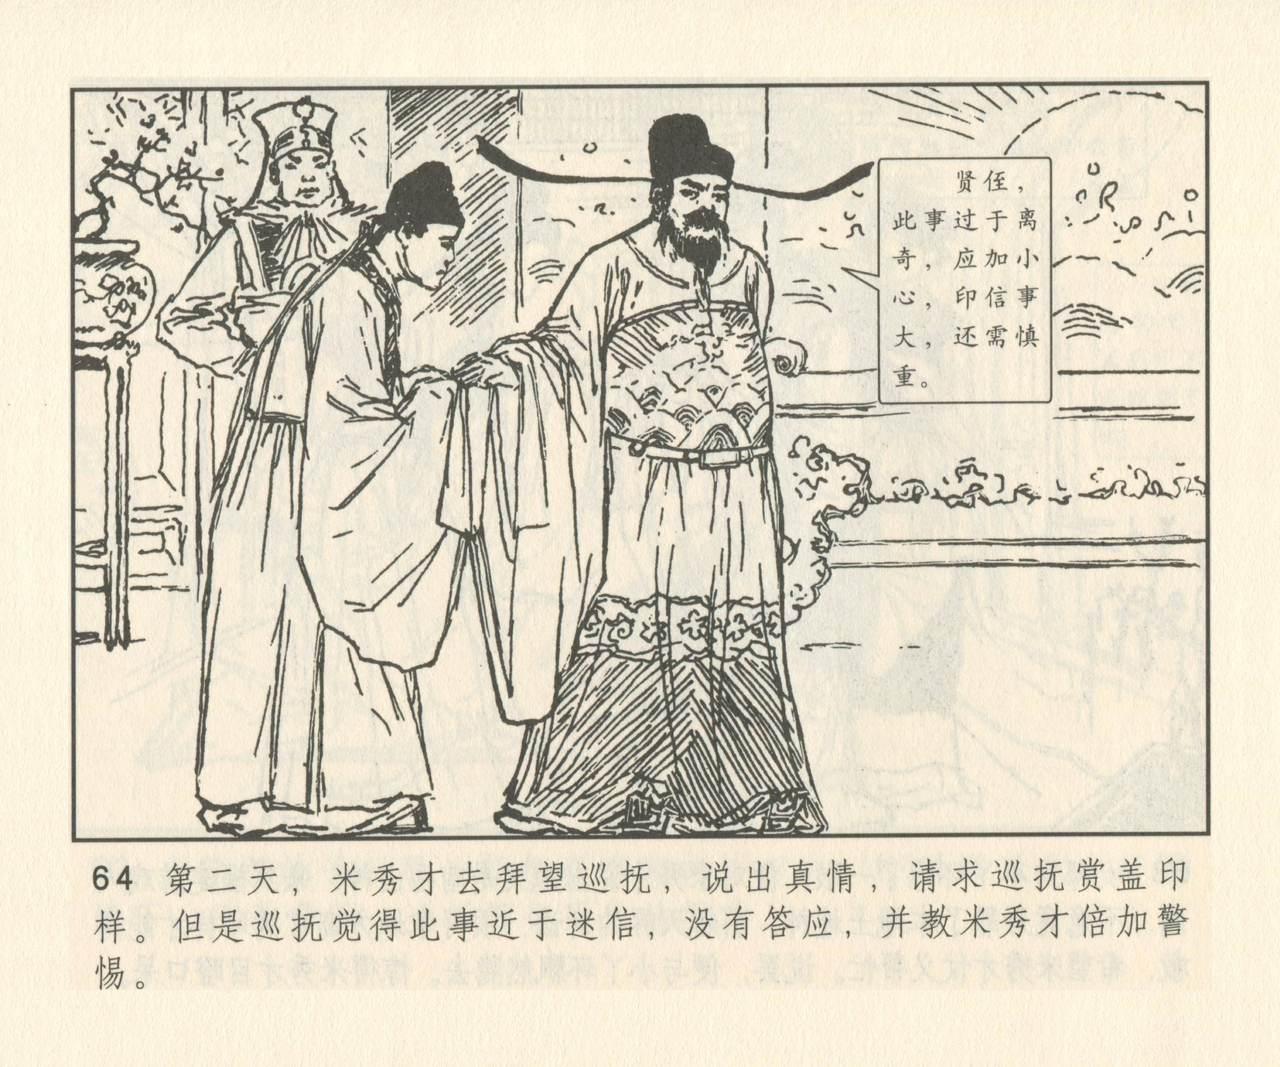 聊斋志异 张玮等绘 天津人民美术出版社 卷二十一 ~ 三十 192